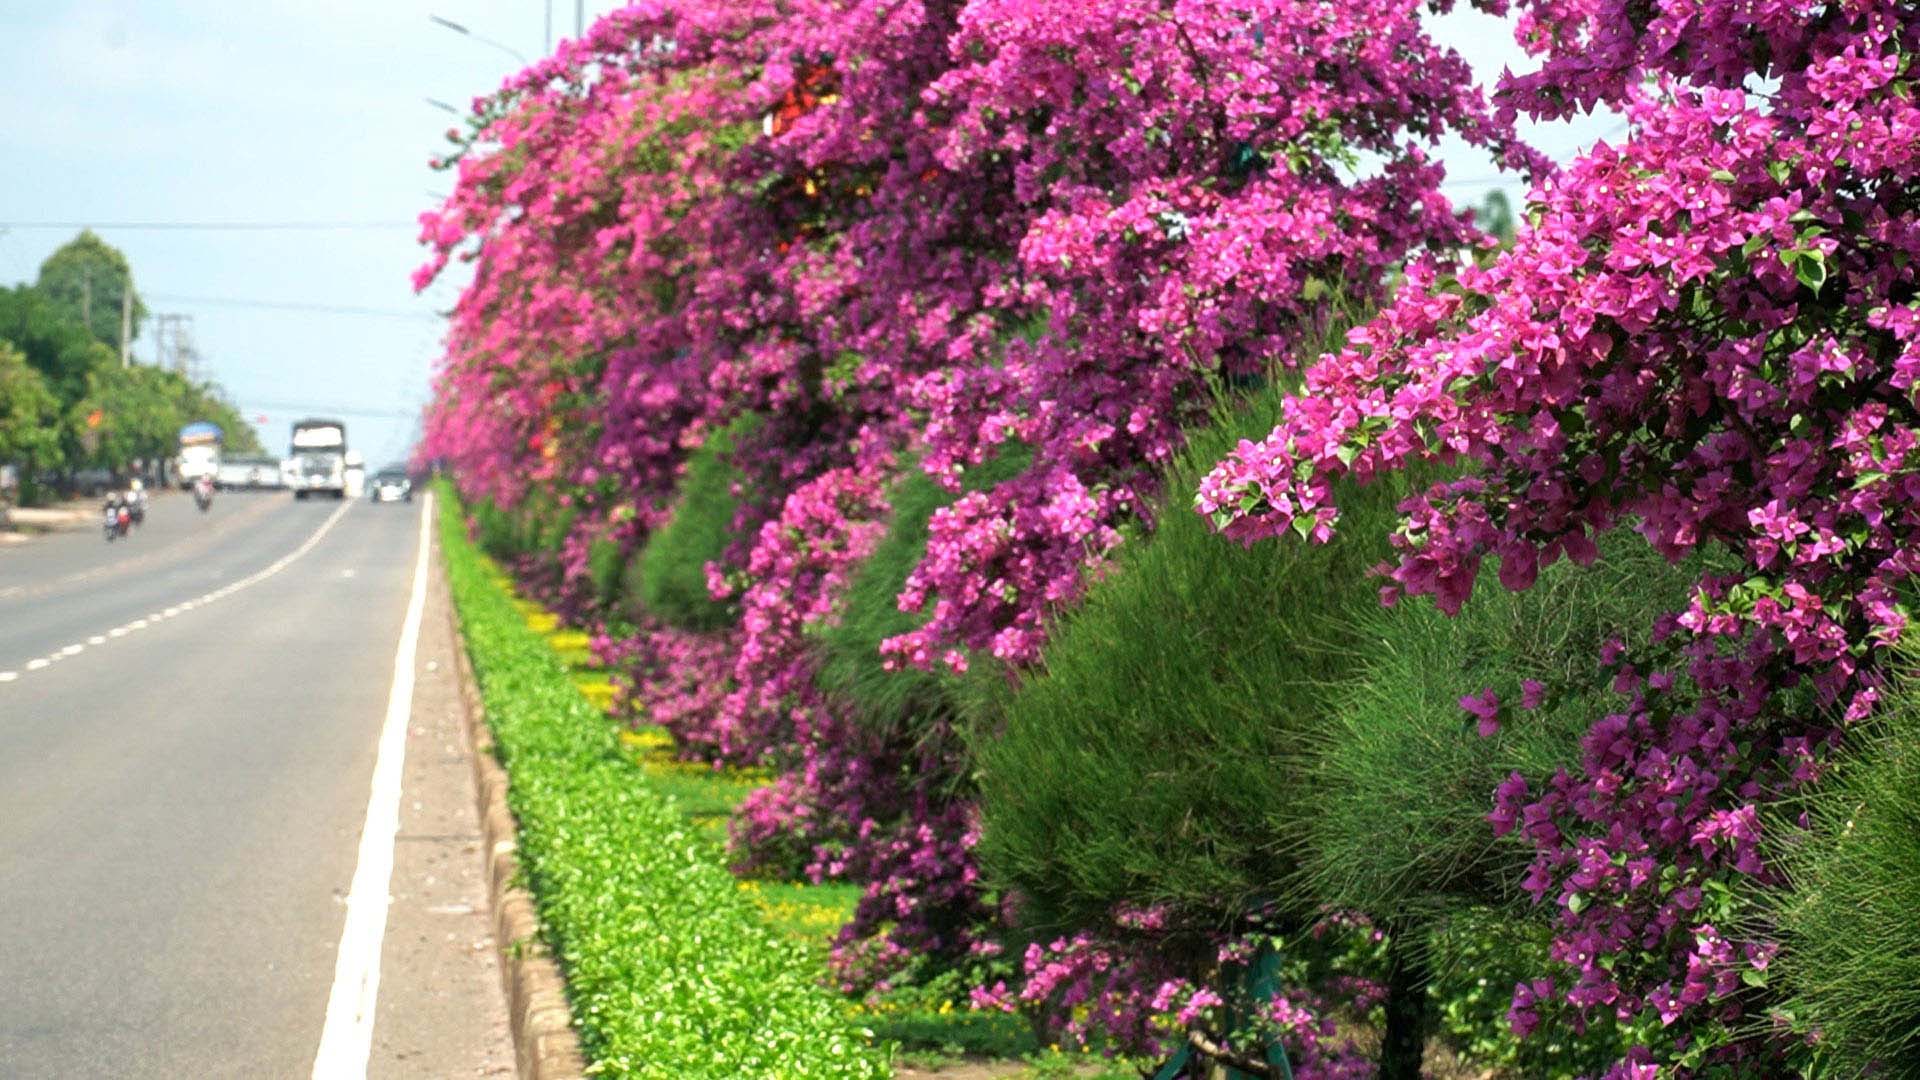 Con đường trồng hoa giấy tuôn bông như suối ở Bình Phước đẹp như phim, hút hồn người xa kẻ gần - Ảnh 3.